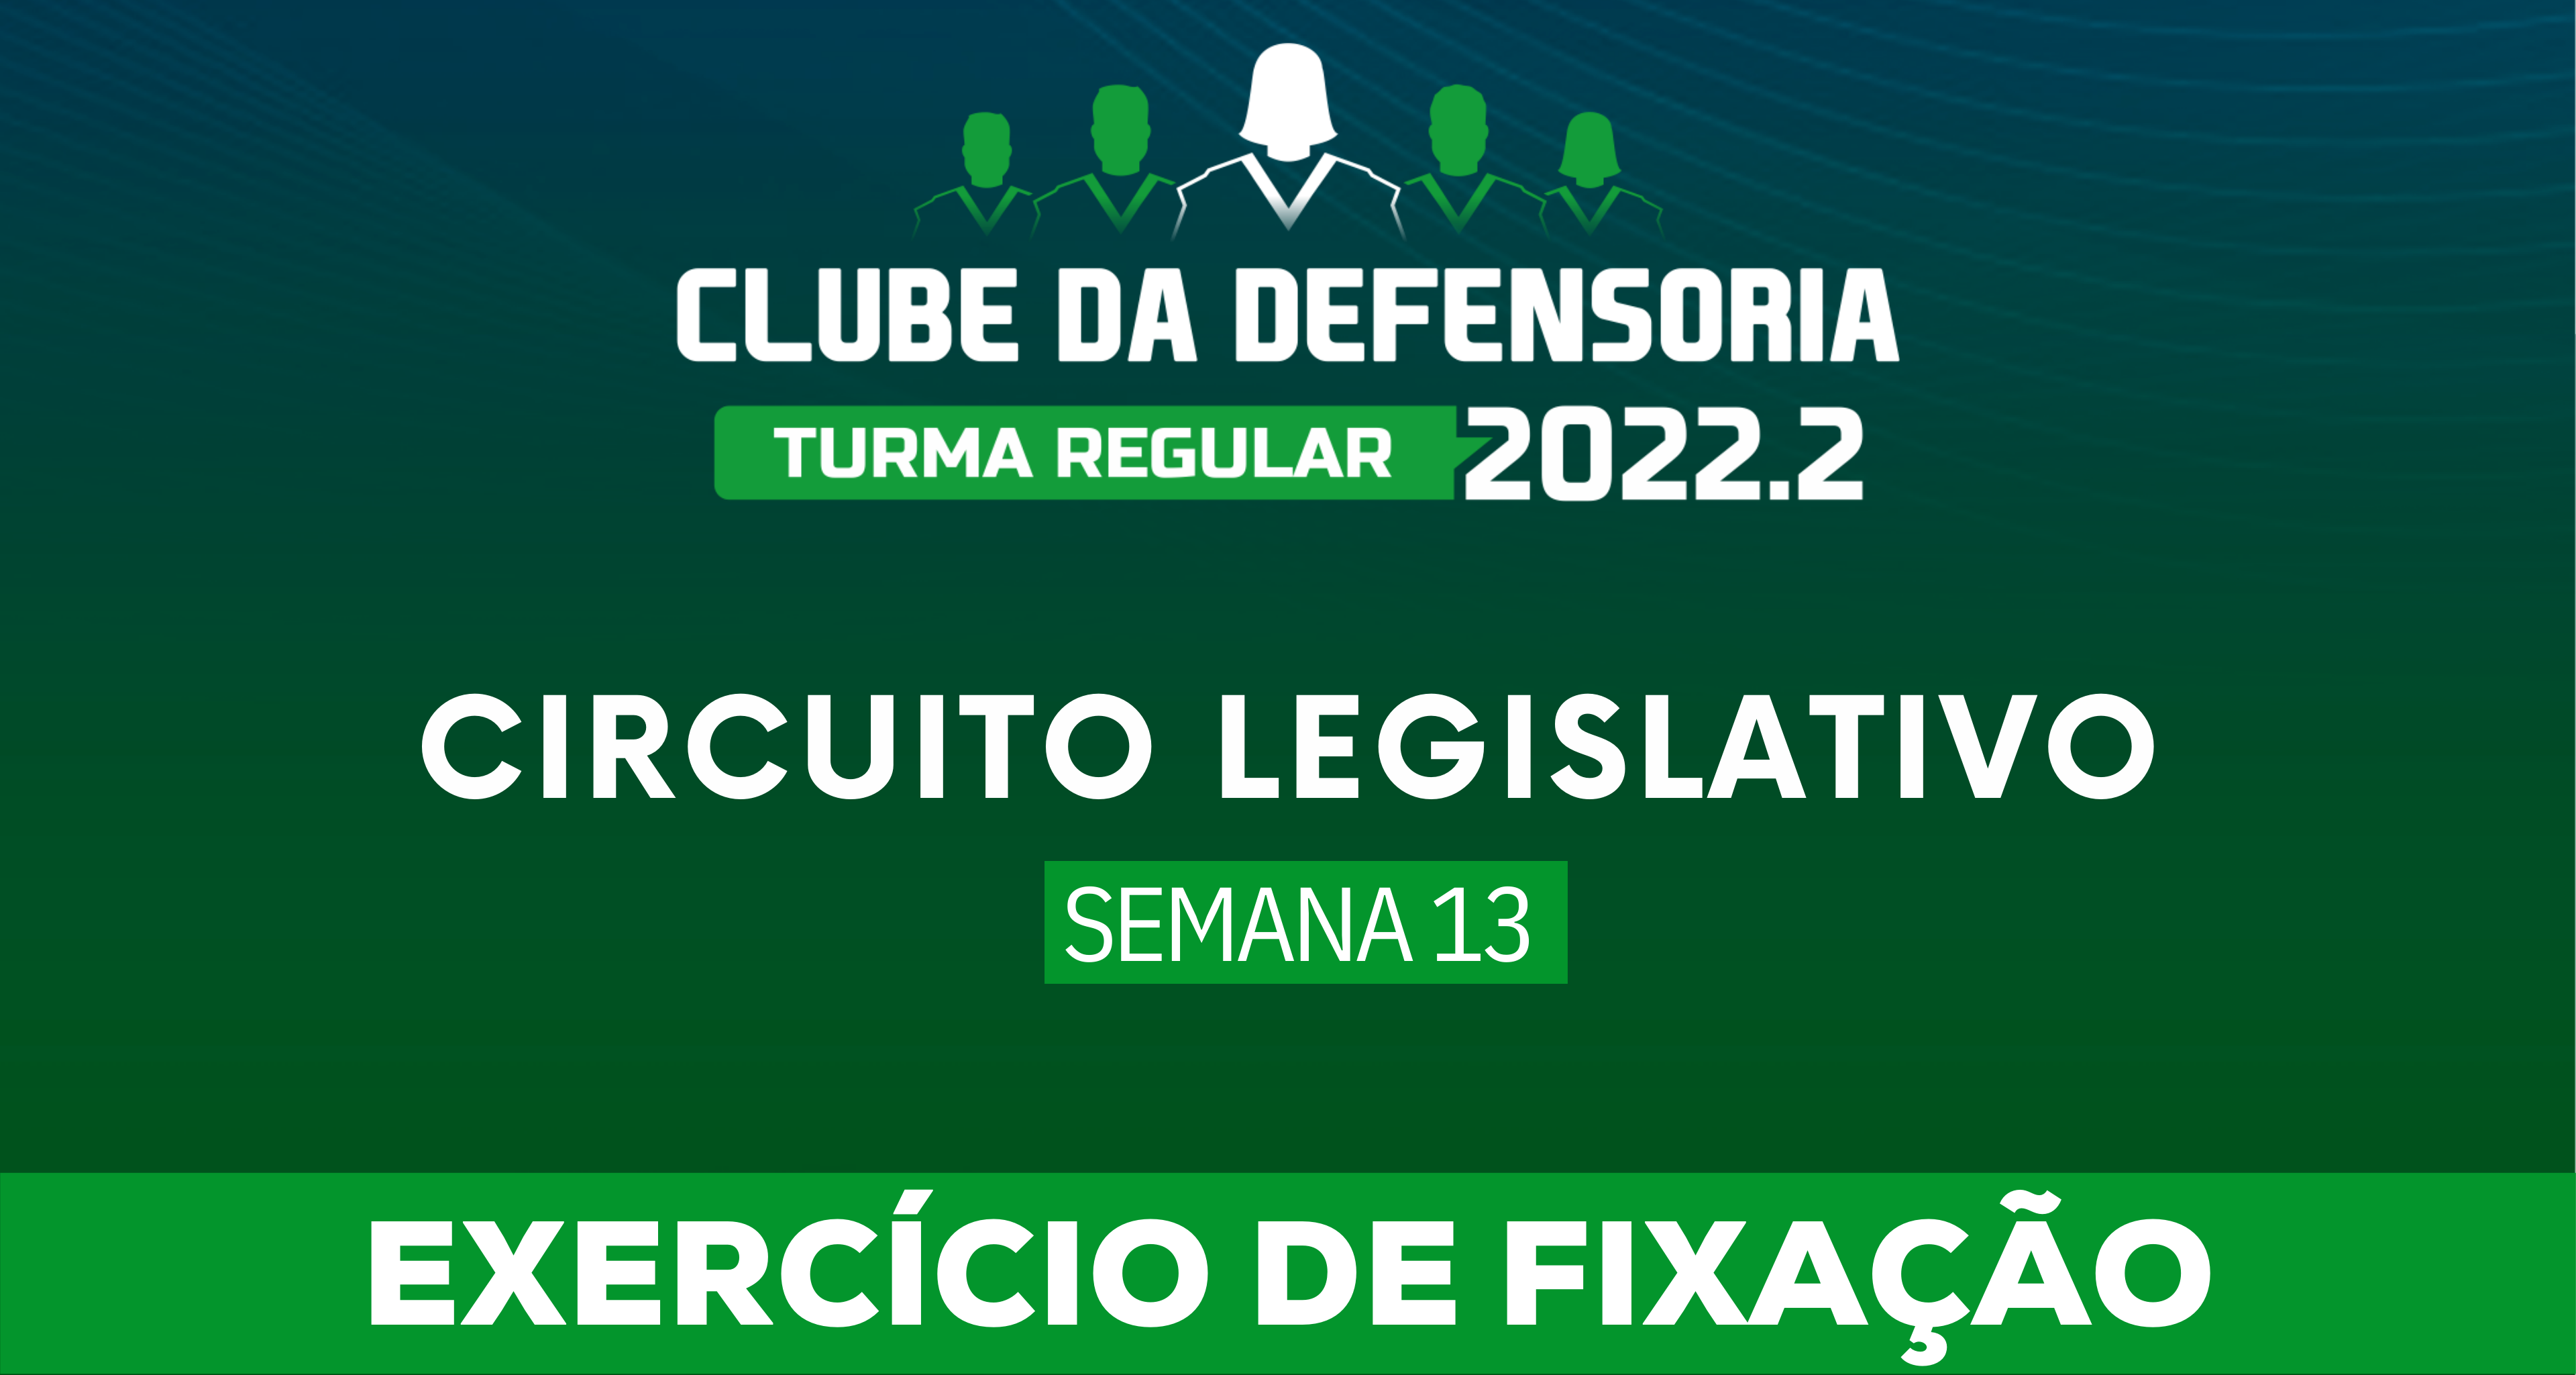 Circuito Legislativo 2022.2 (Clube da Defensoria - Semana 13)